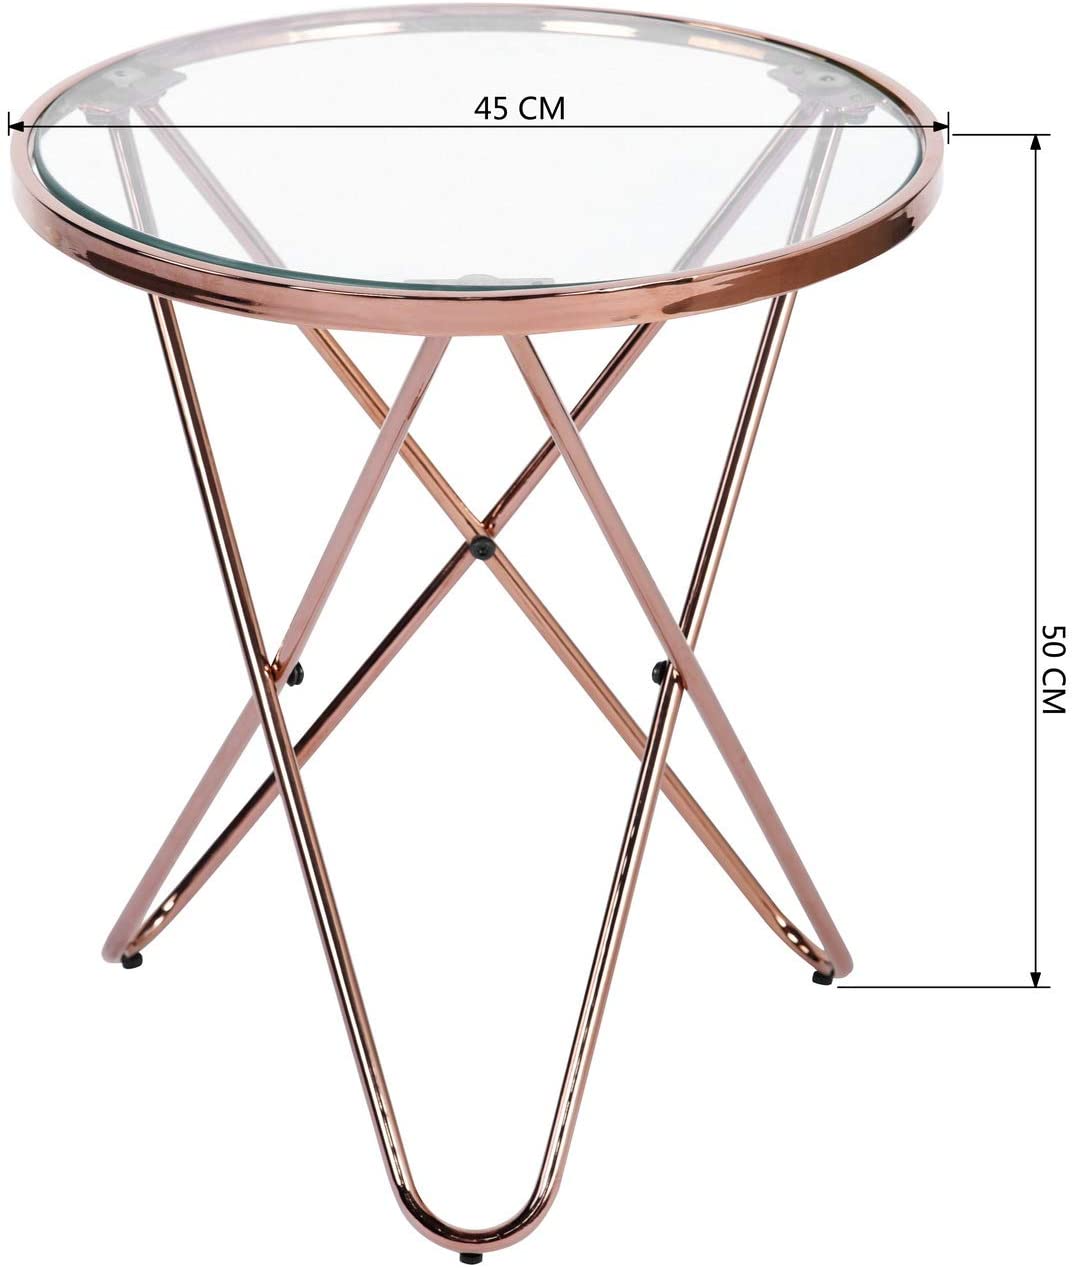 שולחן קפה עגול דגם CANALES S צבע רוז גולד HOMAX